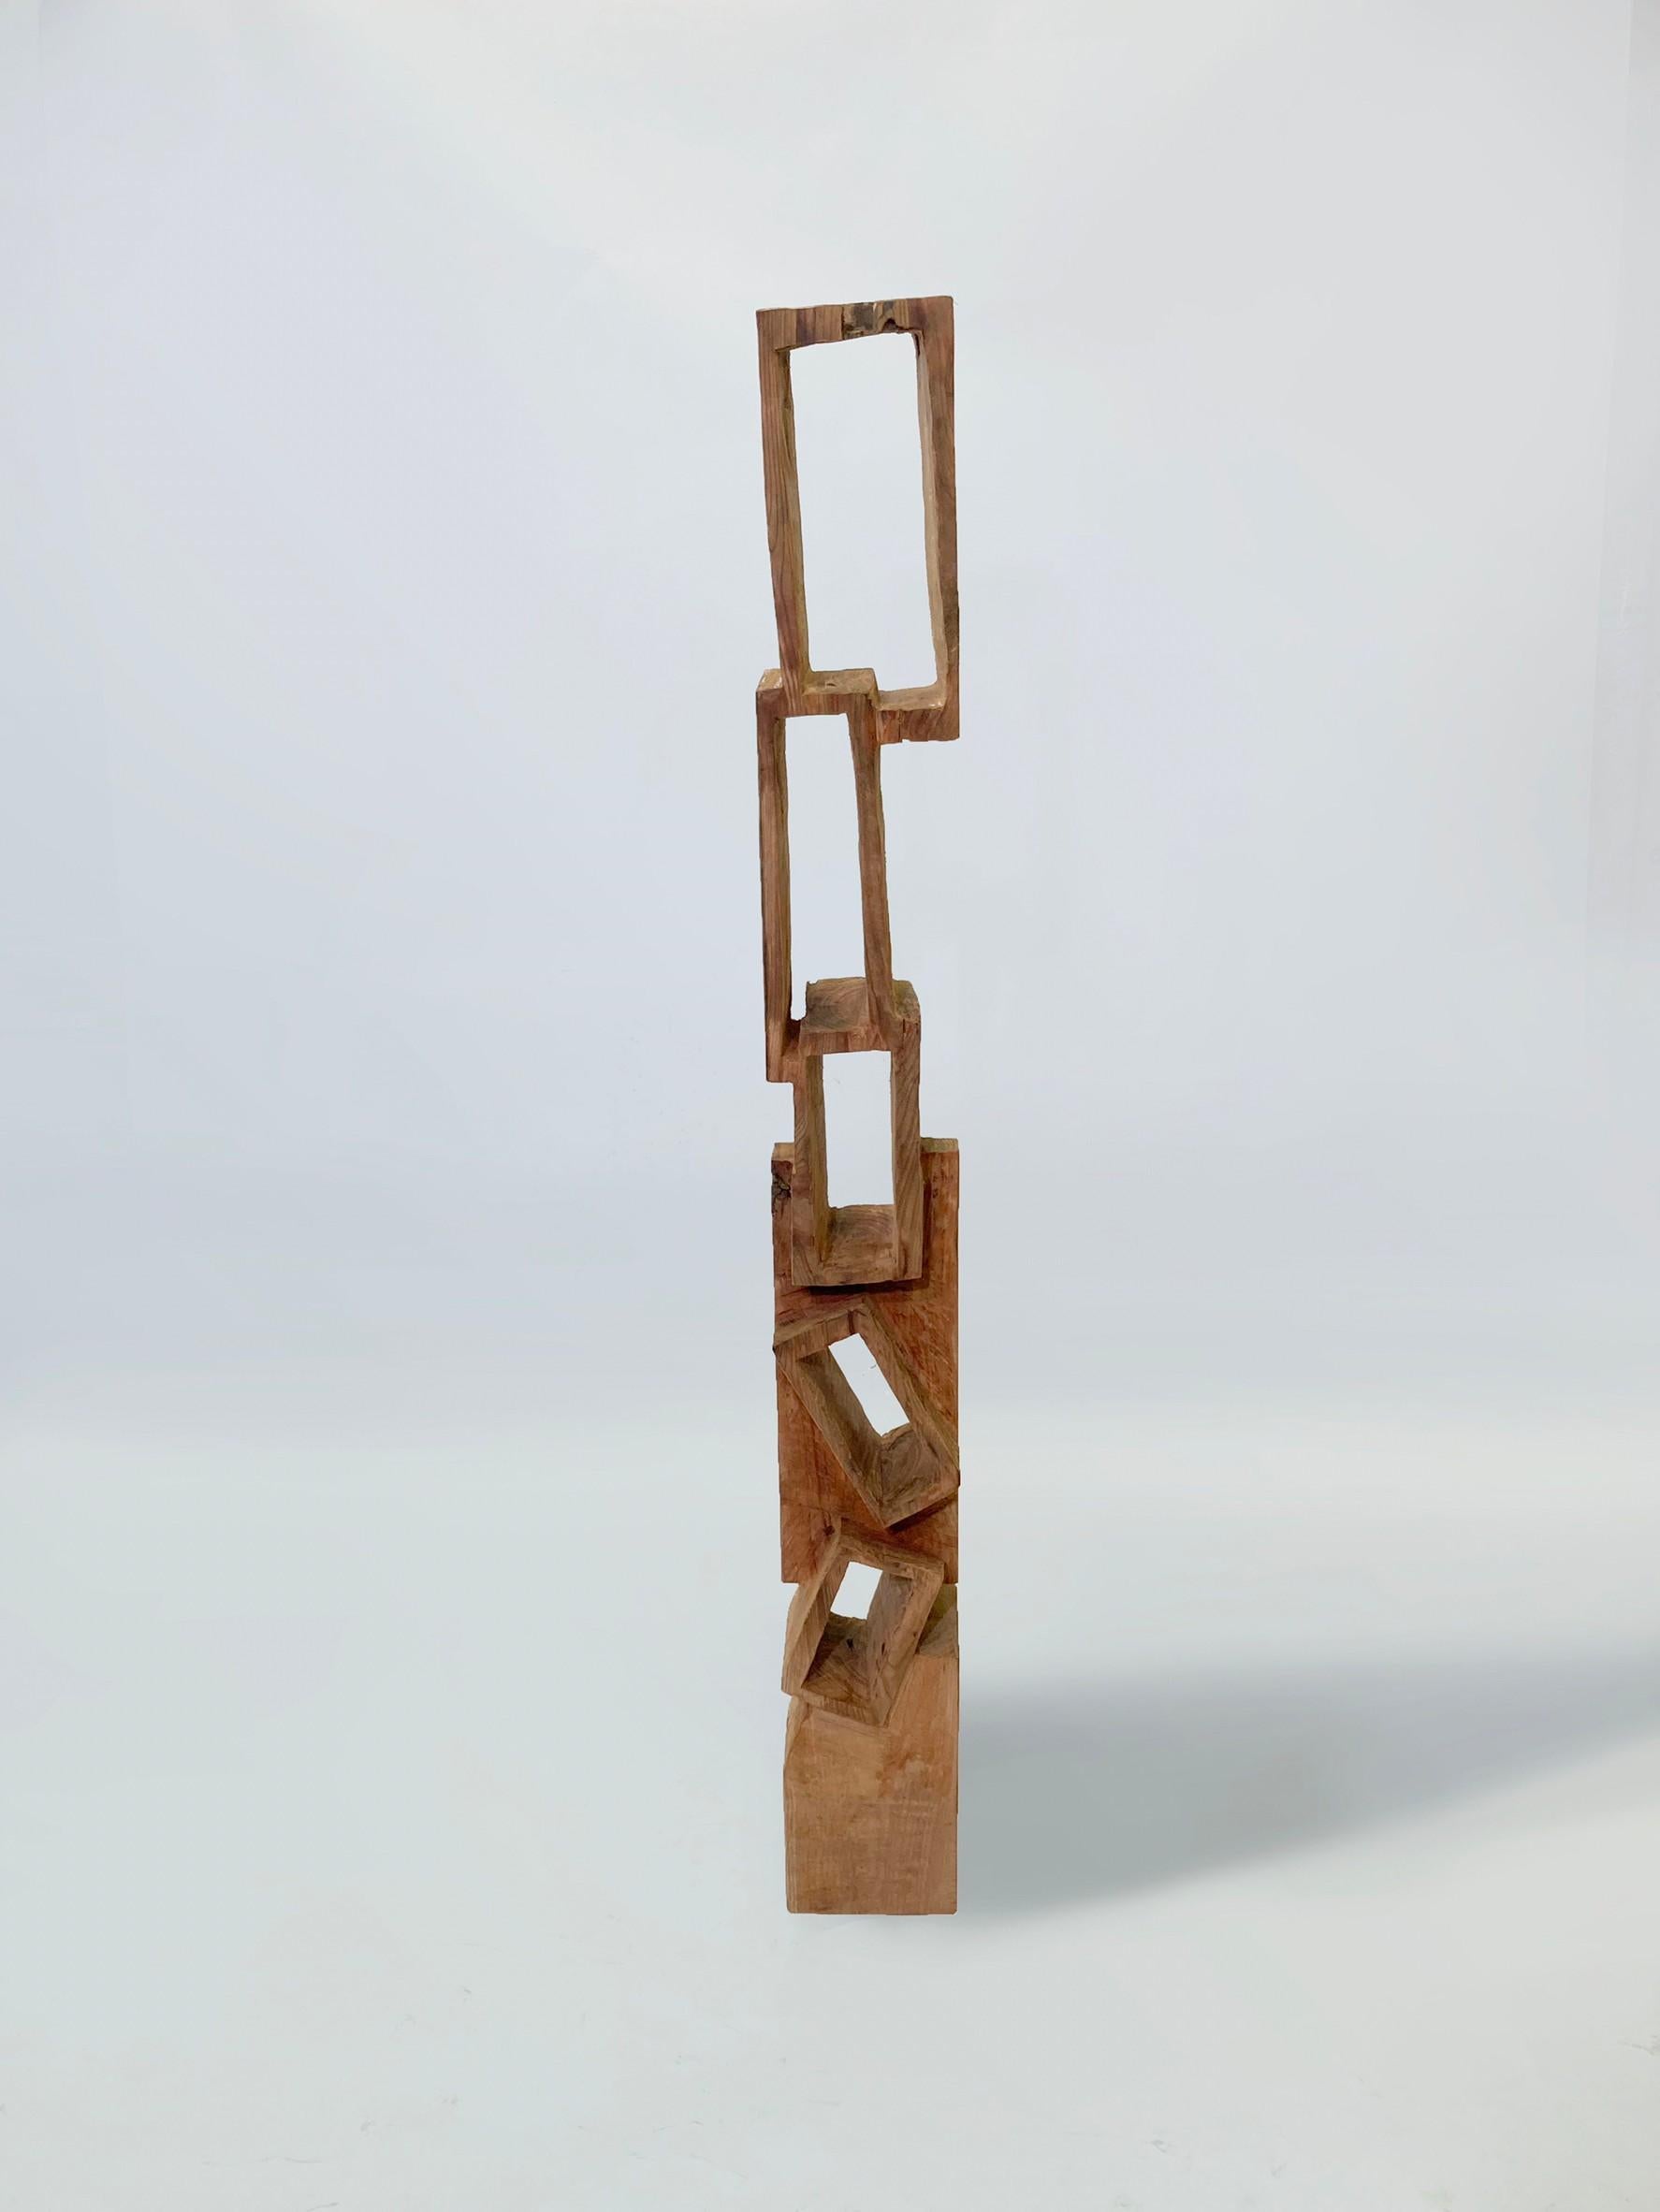 Masouleh-Turm 02
Bildhauerei. Es kann auch als kleines Bücherregal verwendet werden. 

Material: Zelkova
Dieses Werk wird mit einigen Arten von Kettensägen aus Holz geschnitzt.
Die meisten Hölzer, die er für seine Werke verwendet, sind nicht zu